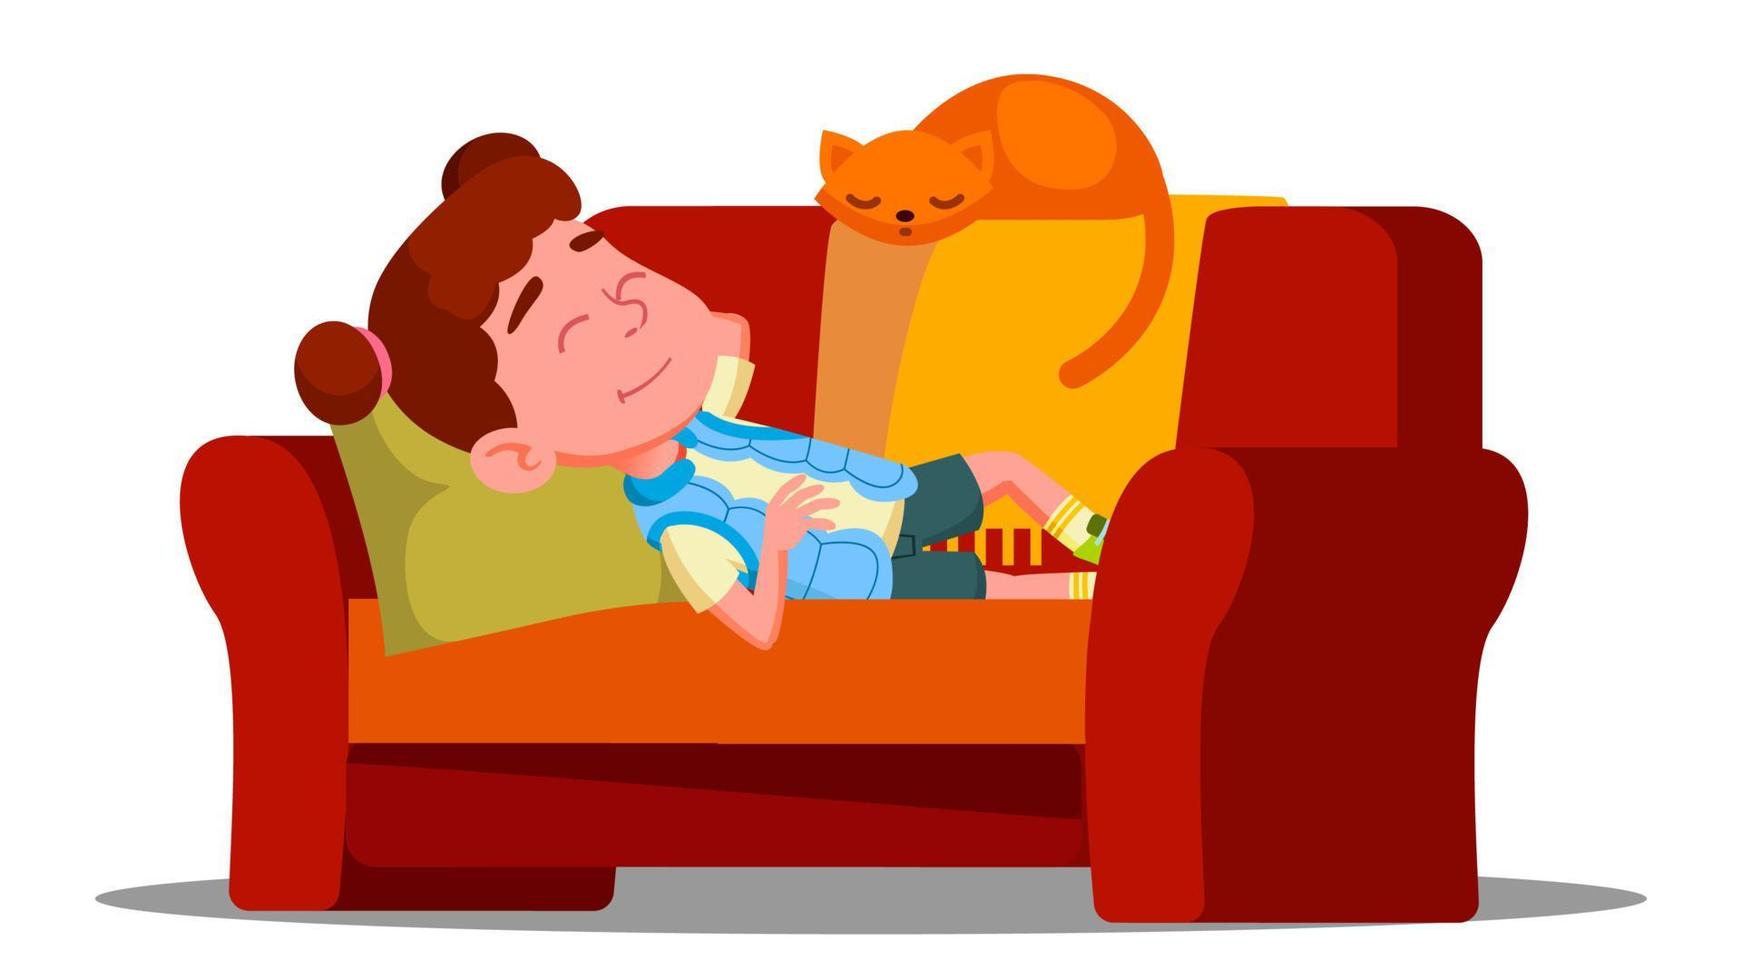 niña cansada durmiendo en el sofá junto al vector de gato dormido. ilustración aislada